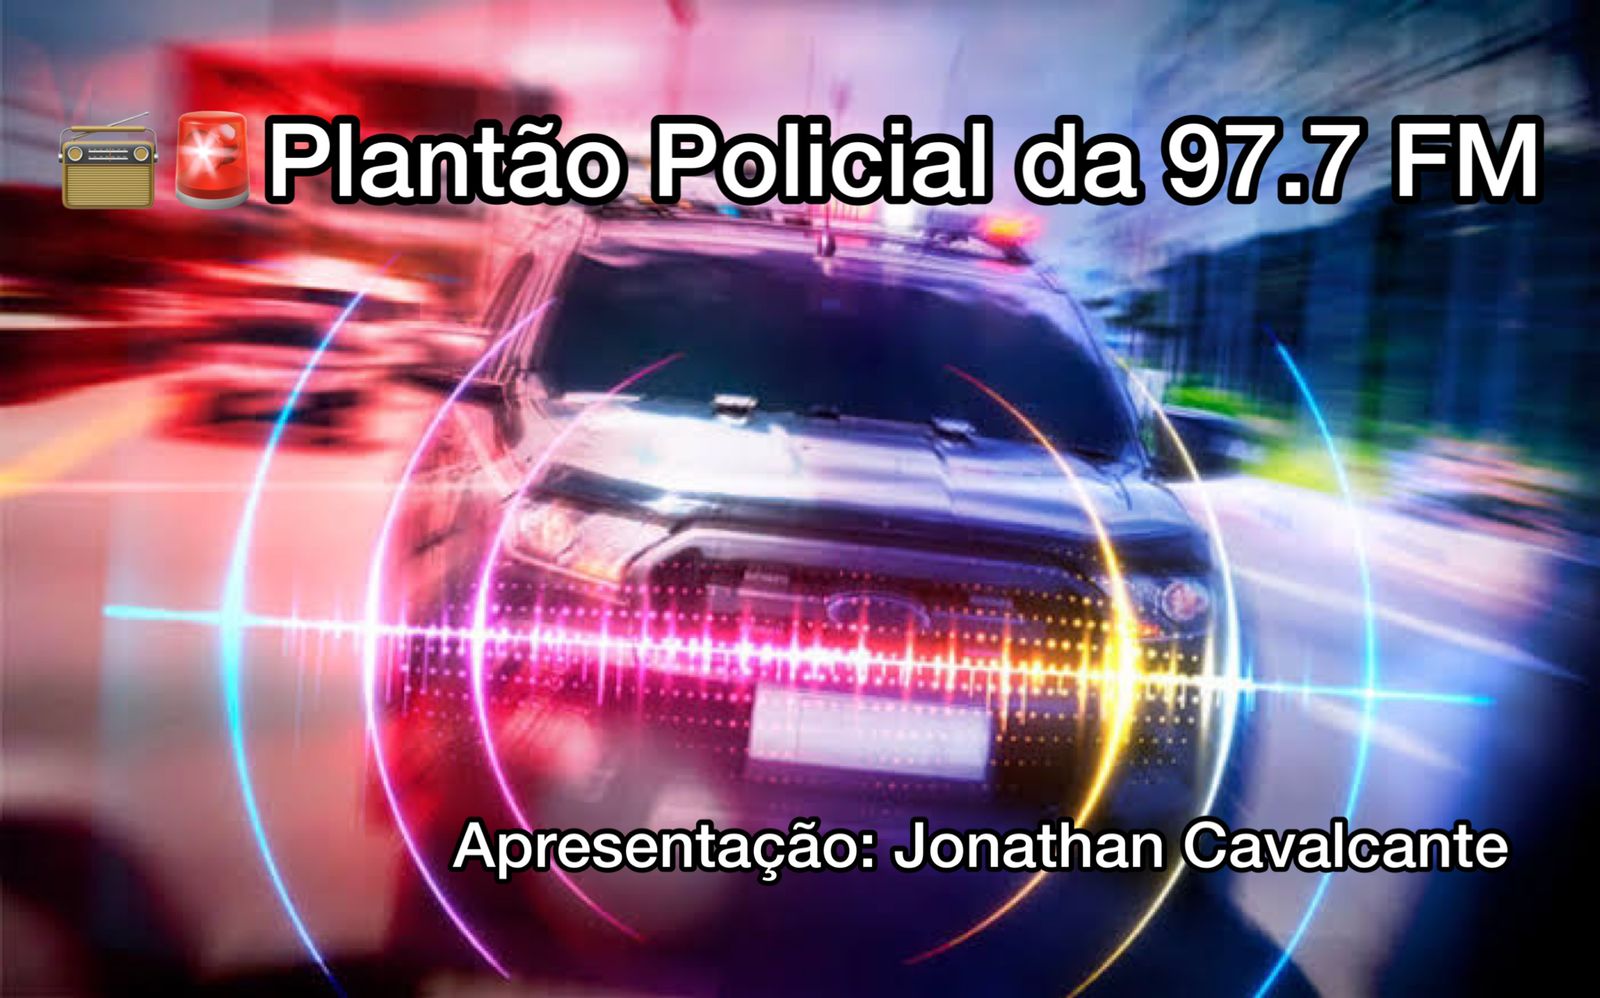 Conteúdo é veiculado diariamente na Rádio São Francisco 97.7 FM (Foto: Reprodução-MobSig)